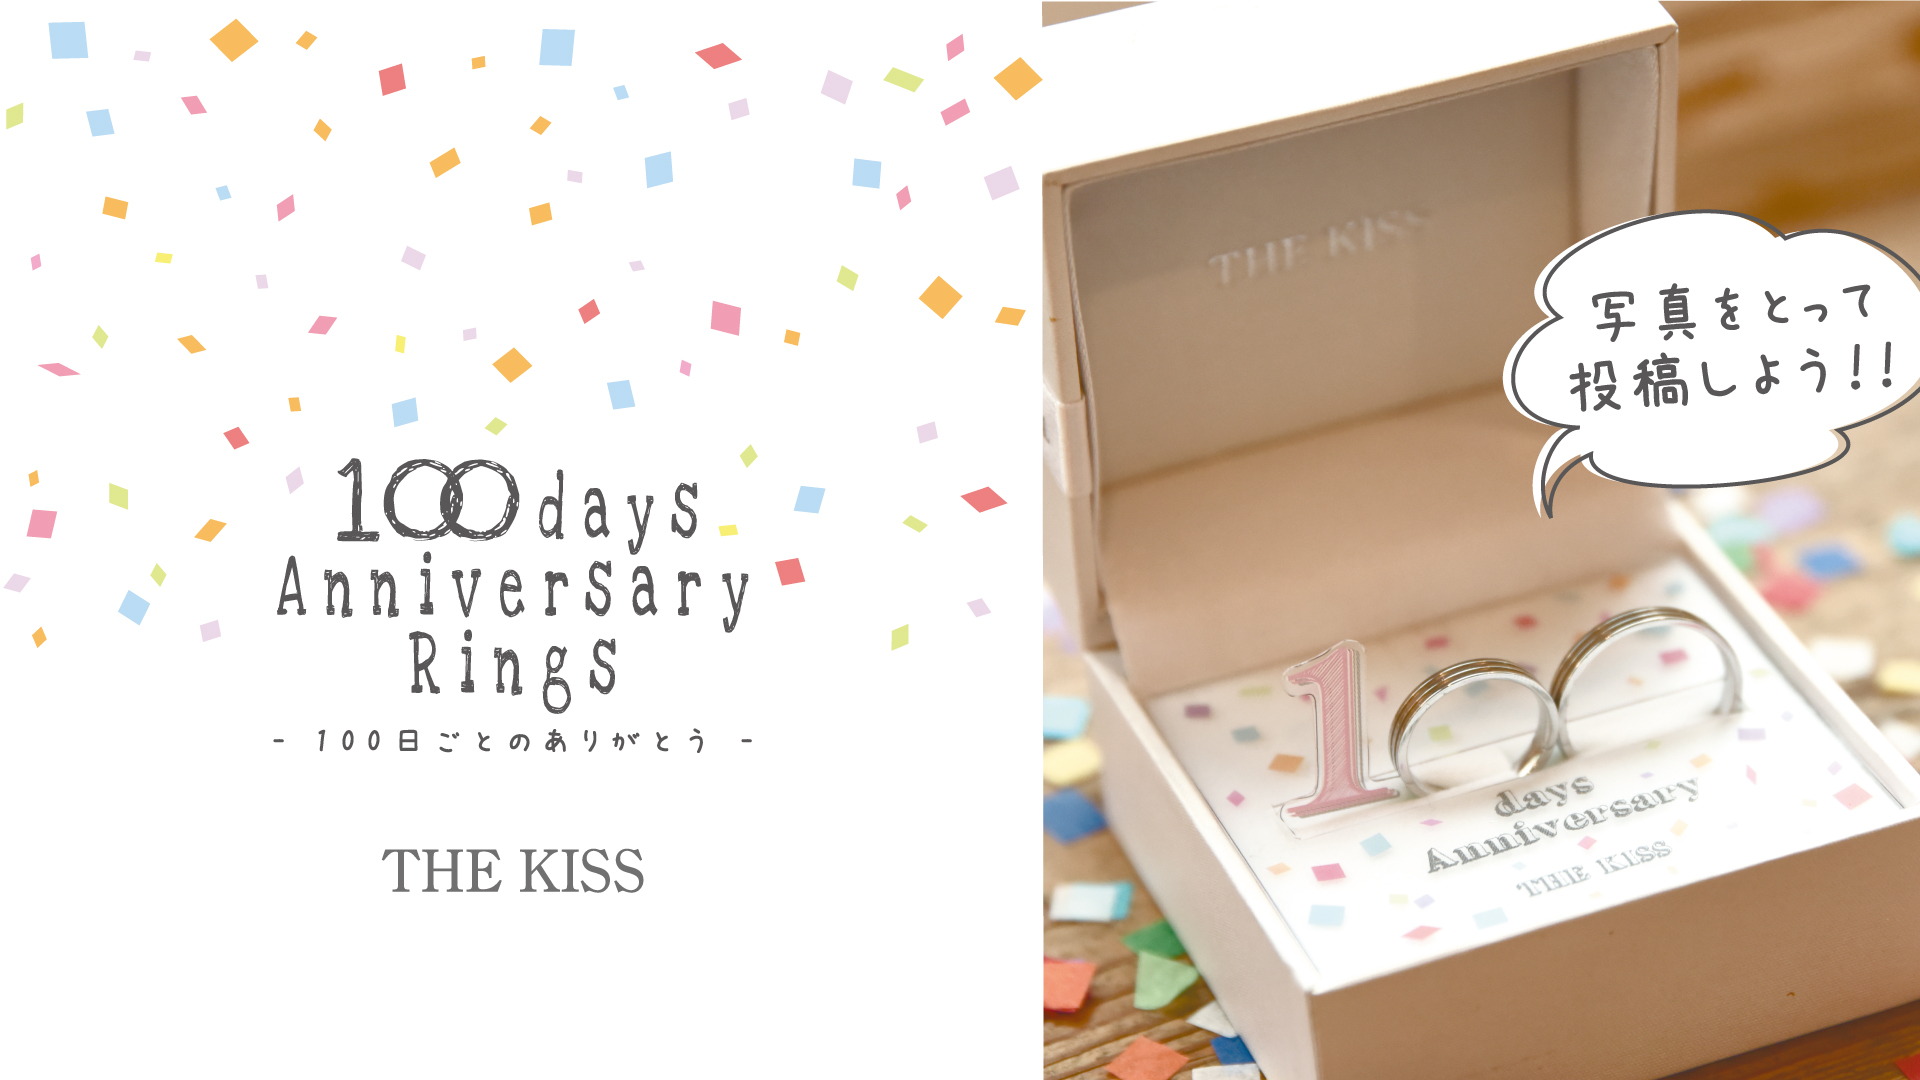 ペアリングno 1ブランド The Kiss 100日リング 撮影キットプレゼントキャンペーン 株式会社ザ キッスのプレスリリース